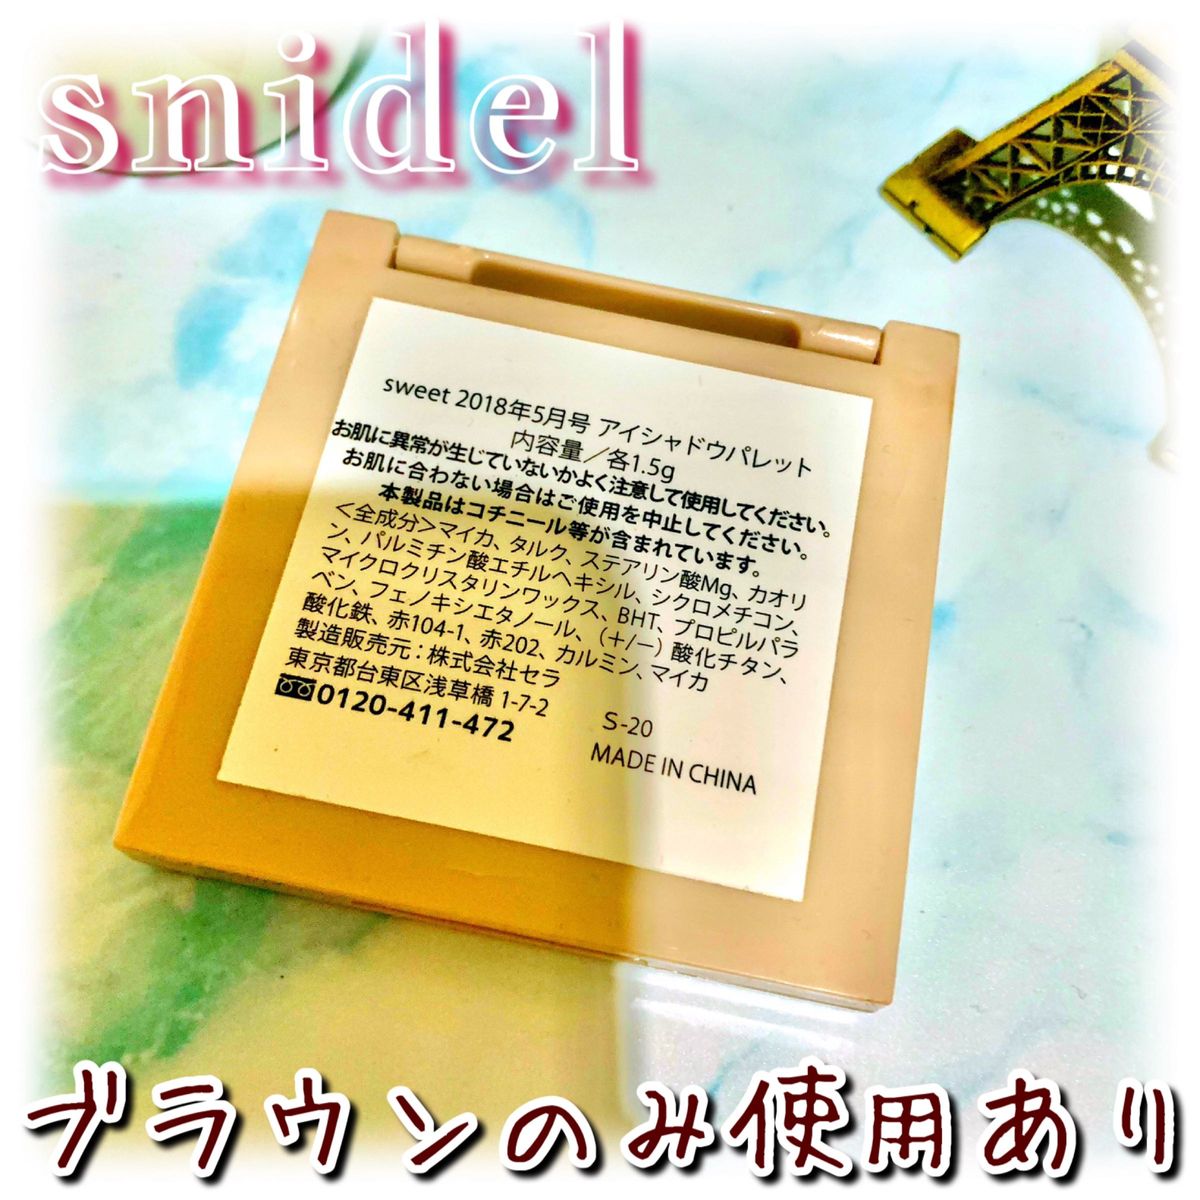 【snidel】スナイデル アイシャドウパレット 4色